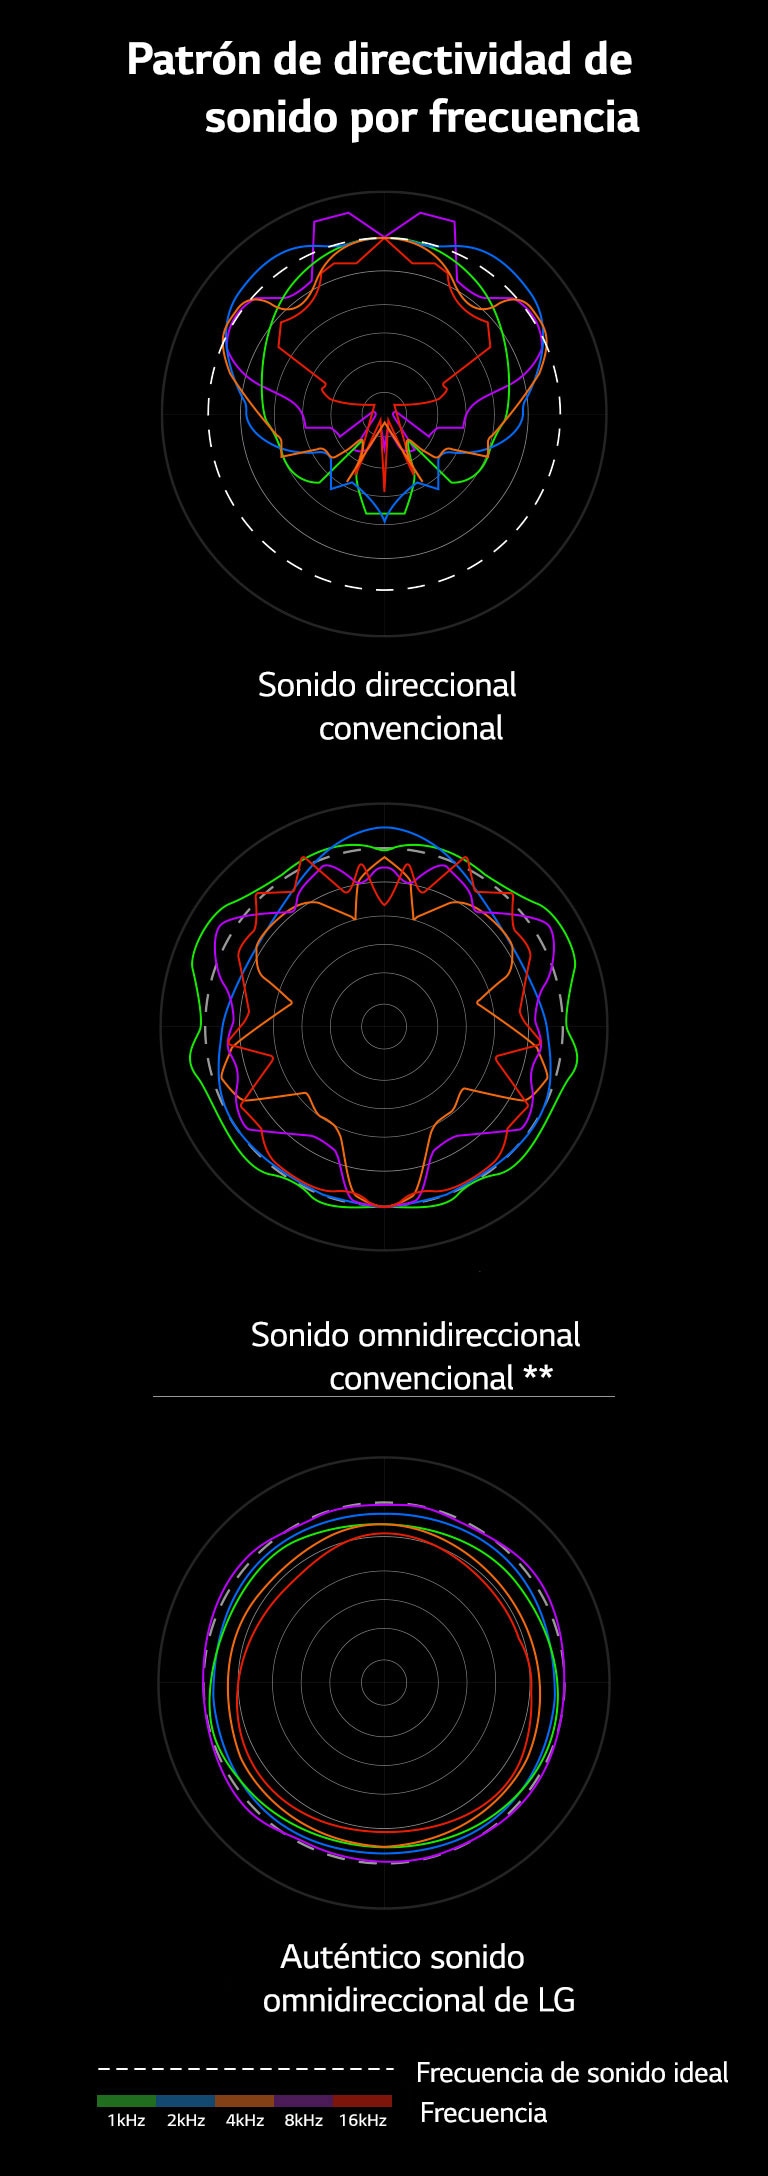 Una imagen que compara las longitudes de onda de sonido del sonido direccional convencional y el sonido omnidireccional convencional con las longitudes de onda de sonido del auténtico sonido omnidireccional de LG.